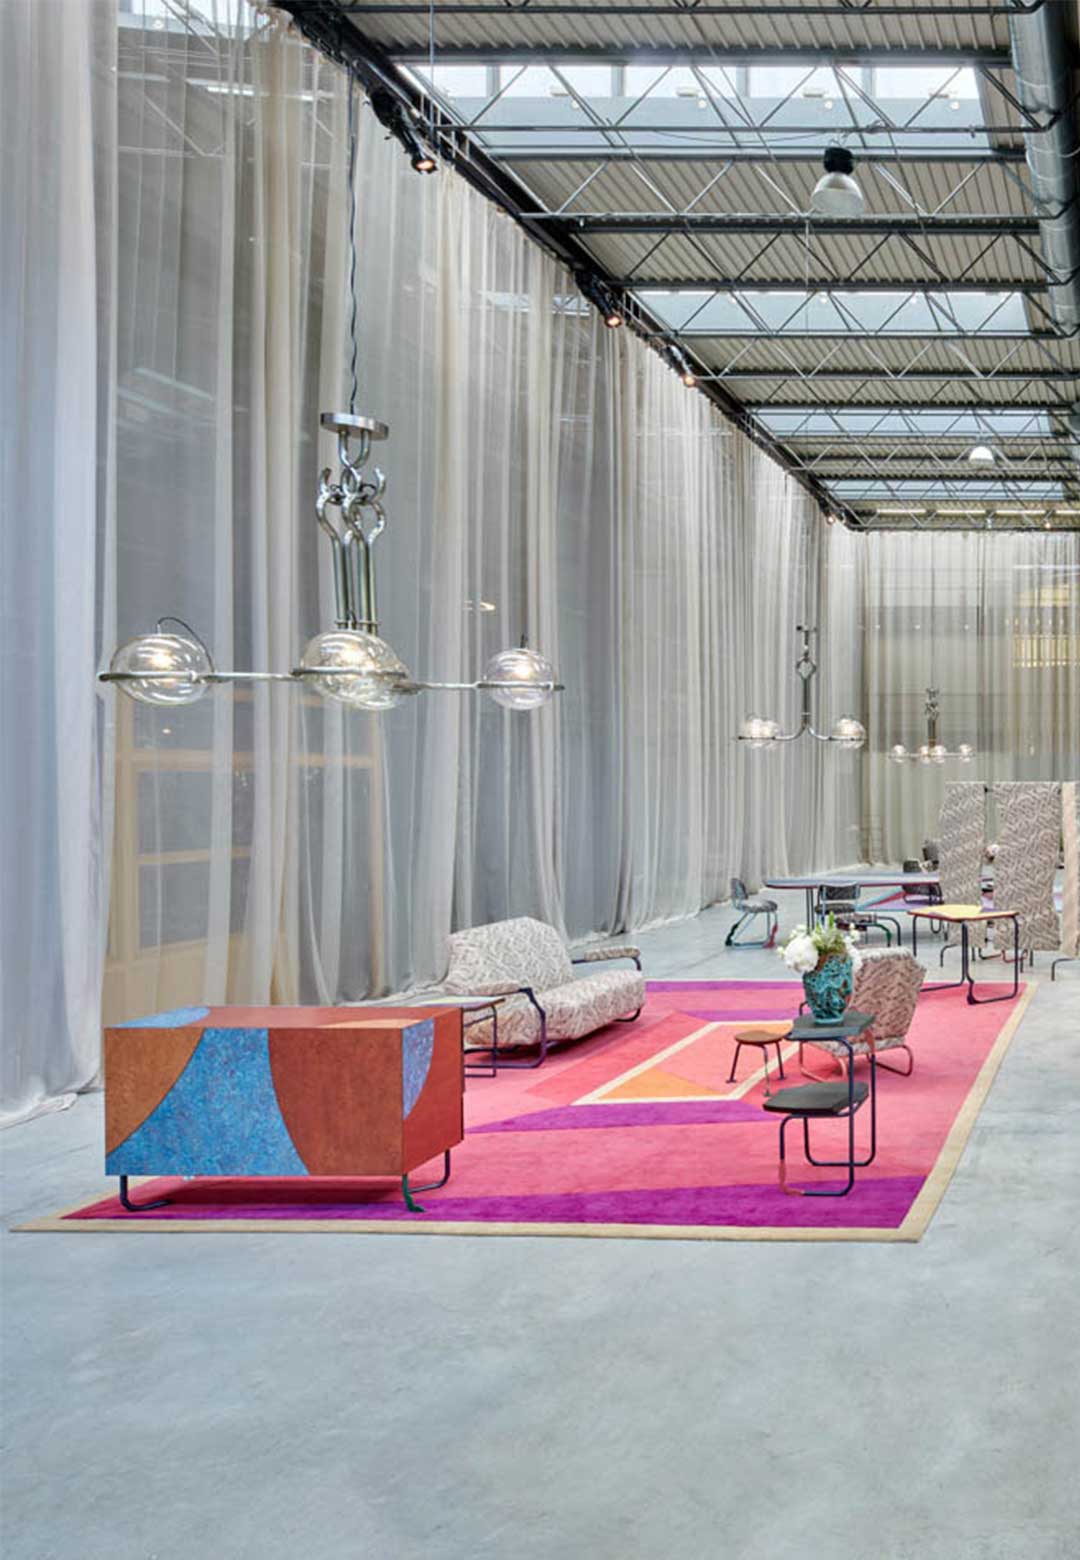 Milan Design Week 2022: fashion meets furniture